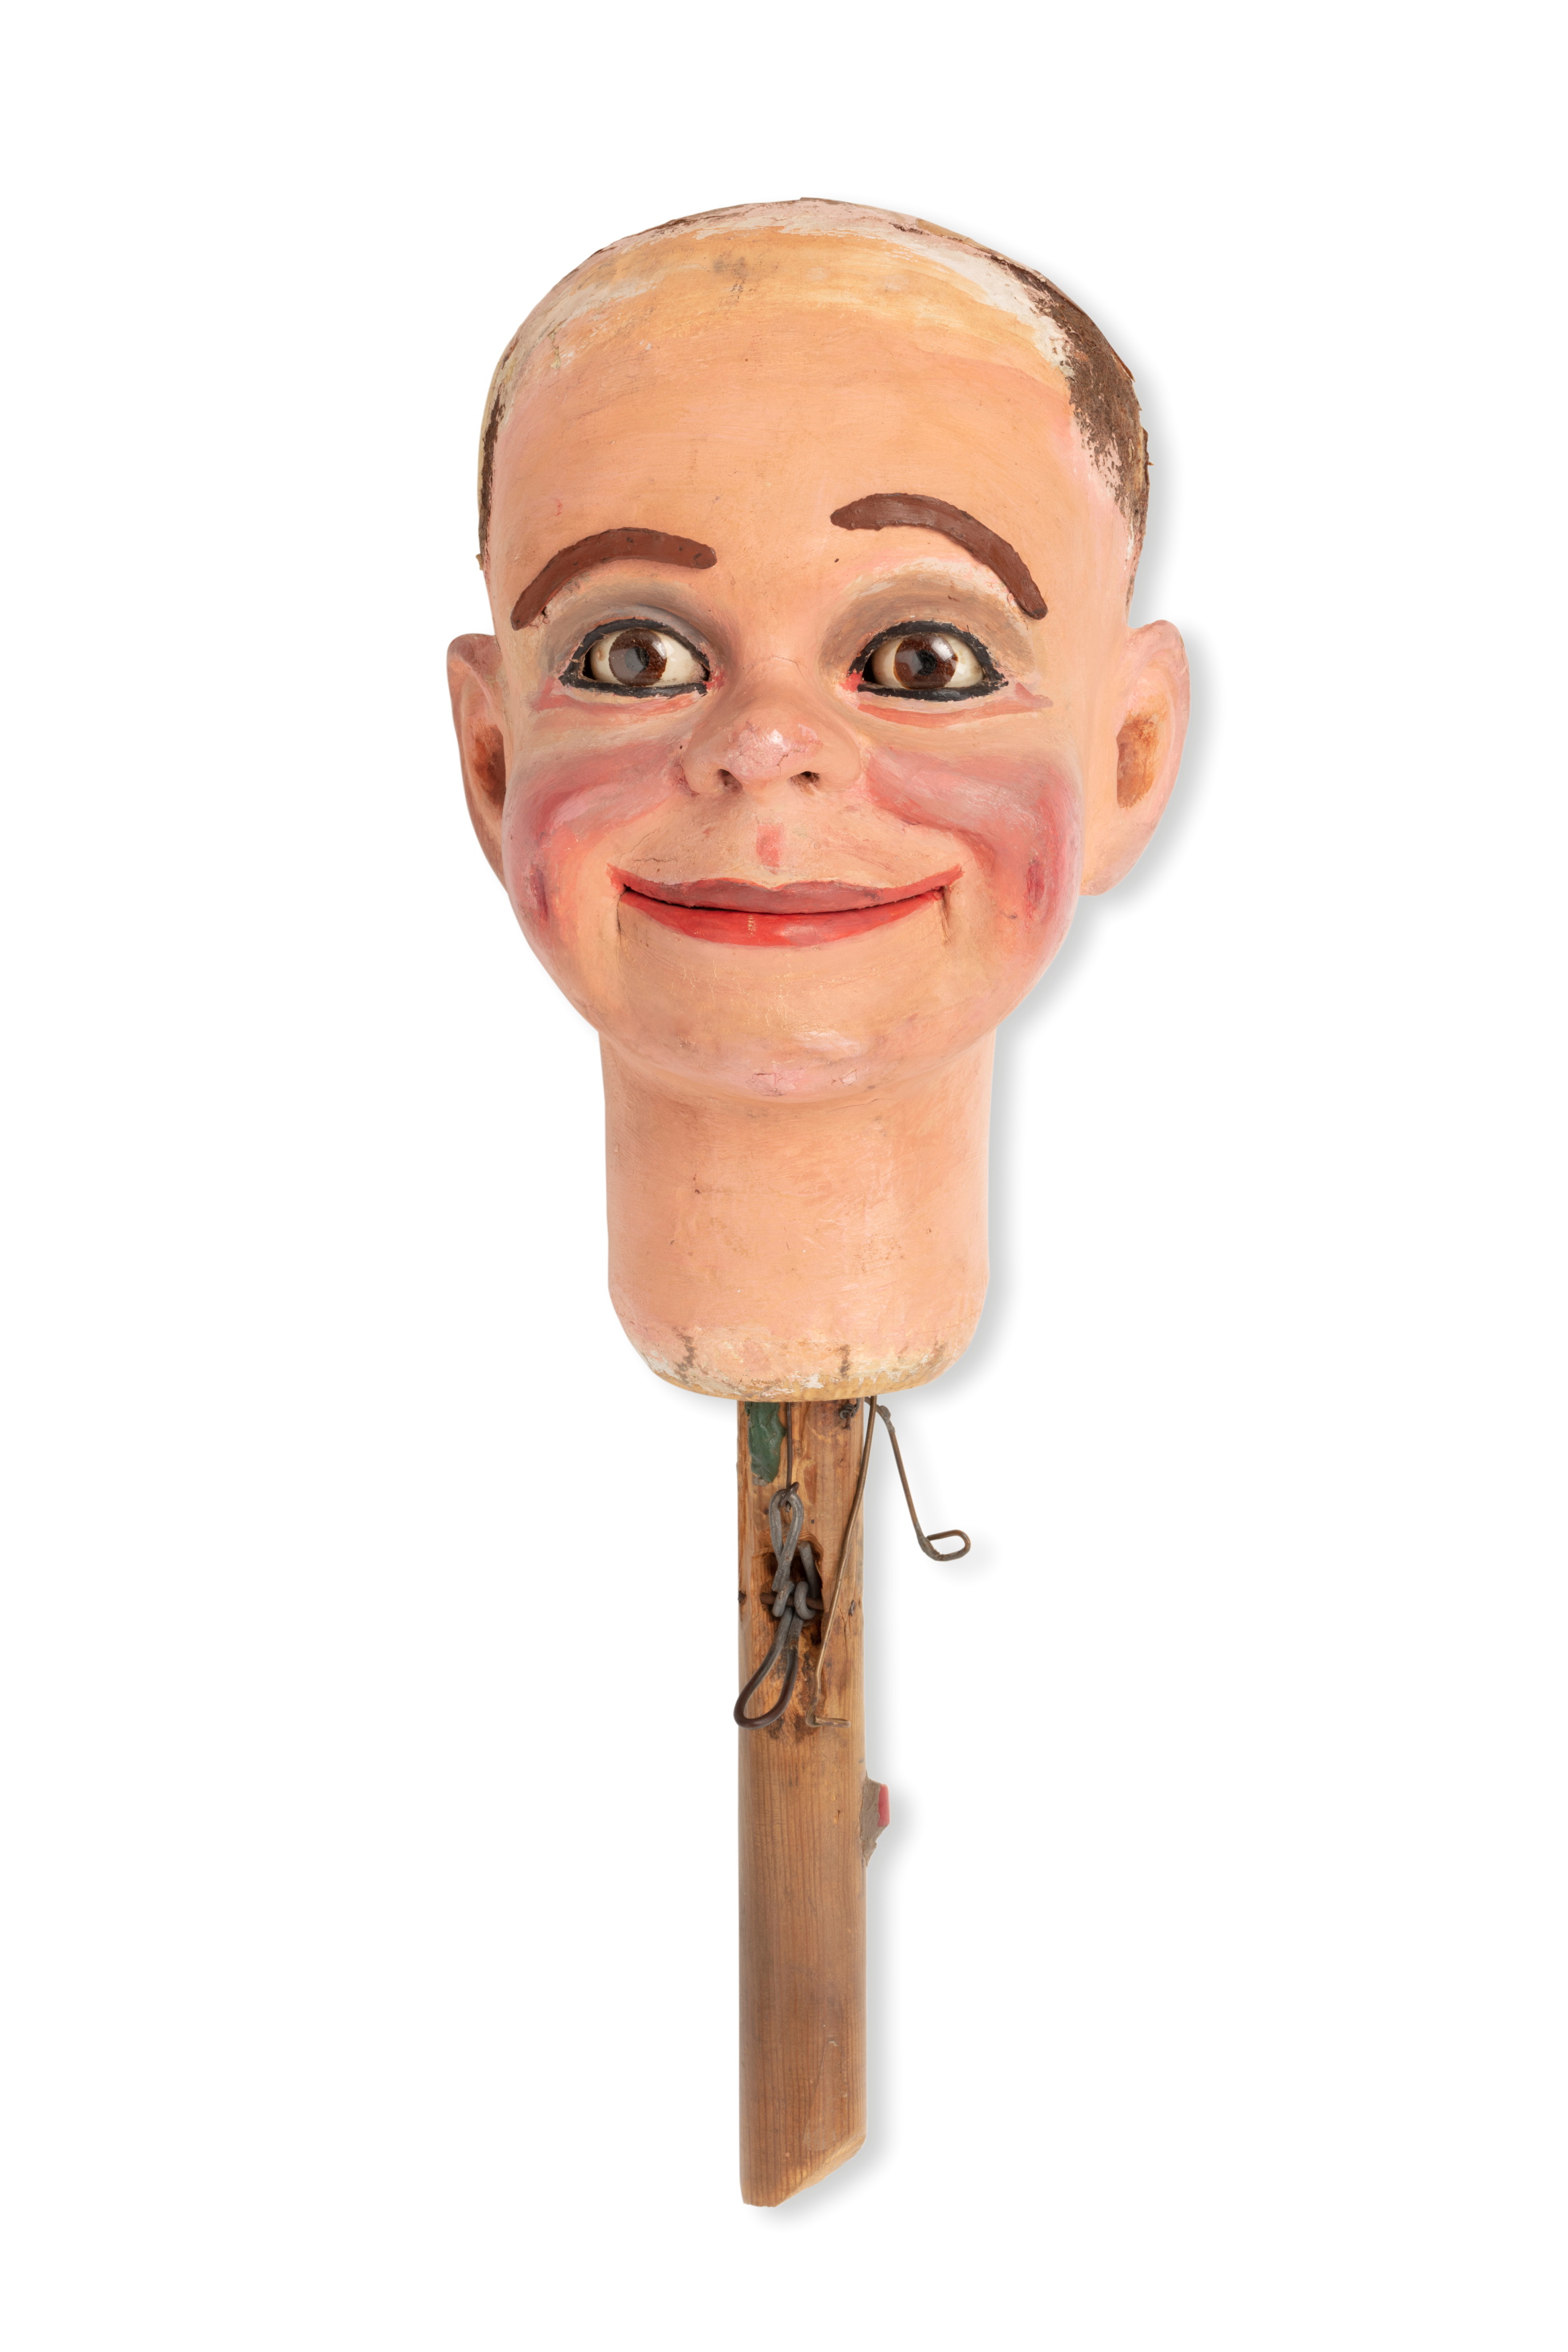 Ventriloquist dummy head